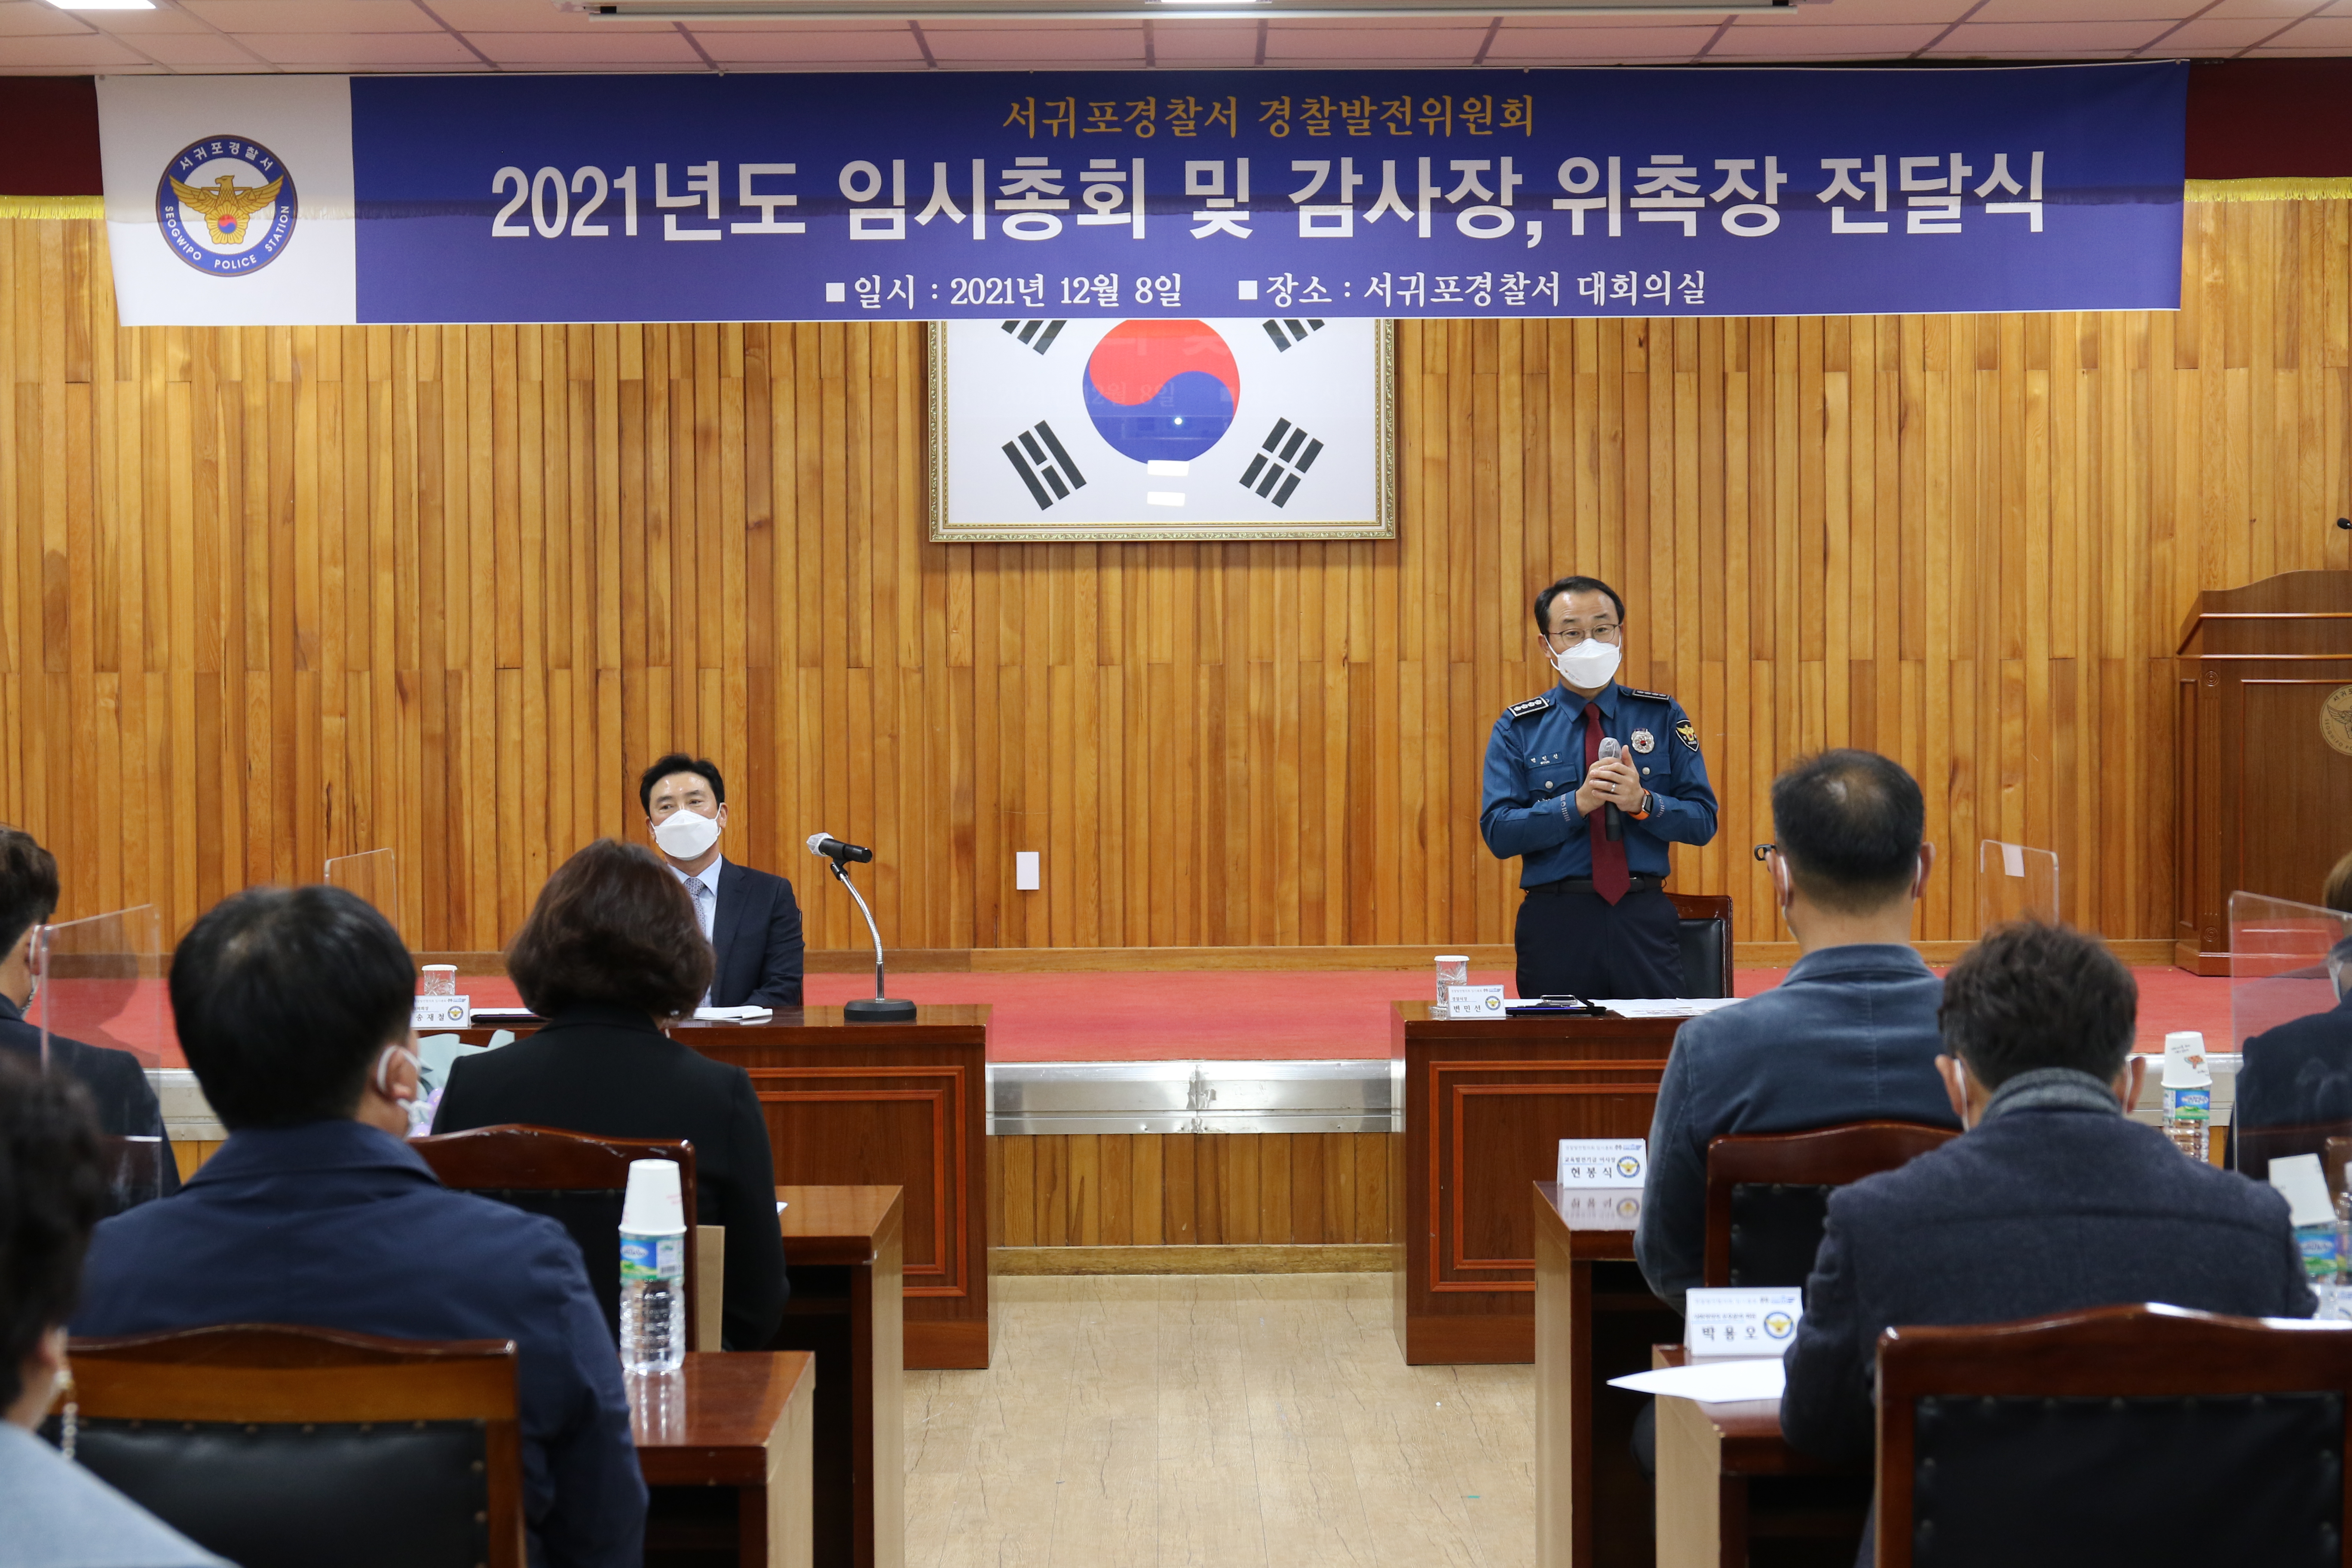 서귀포서, 2021 경찰발전협의회 임시총회 및 감사장, 위촉장 수여식 개최